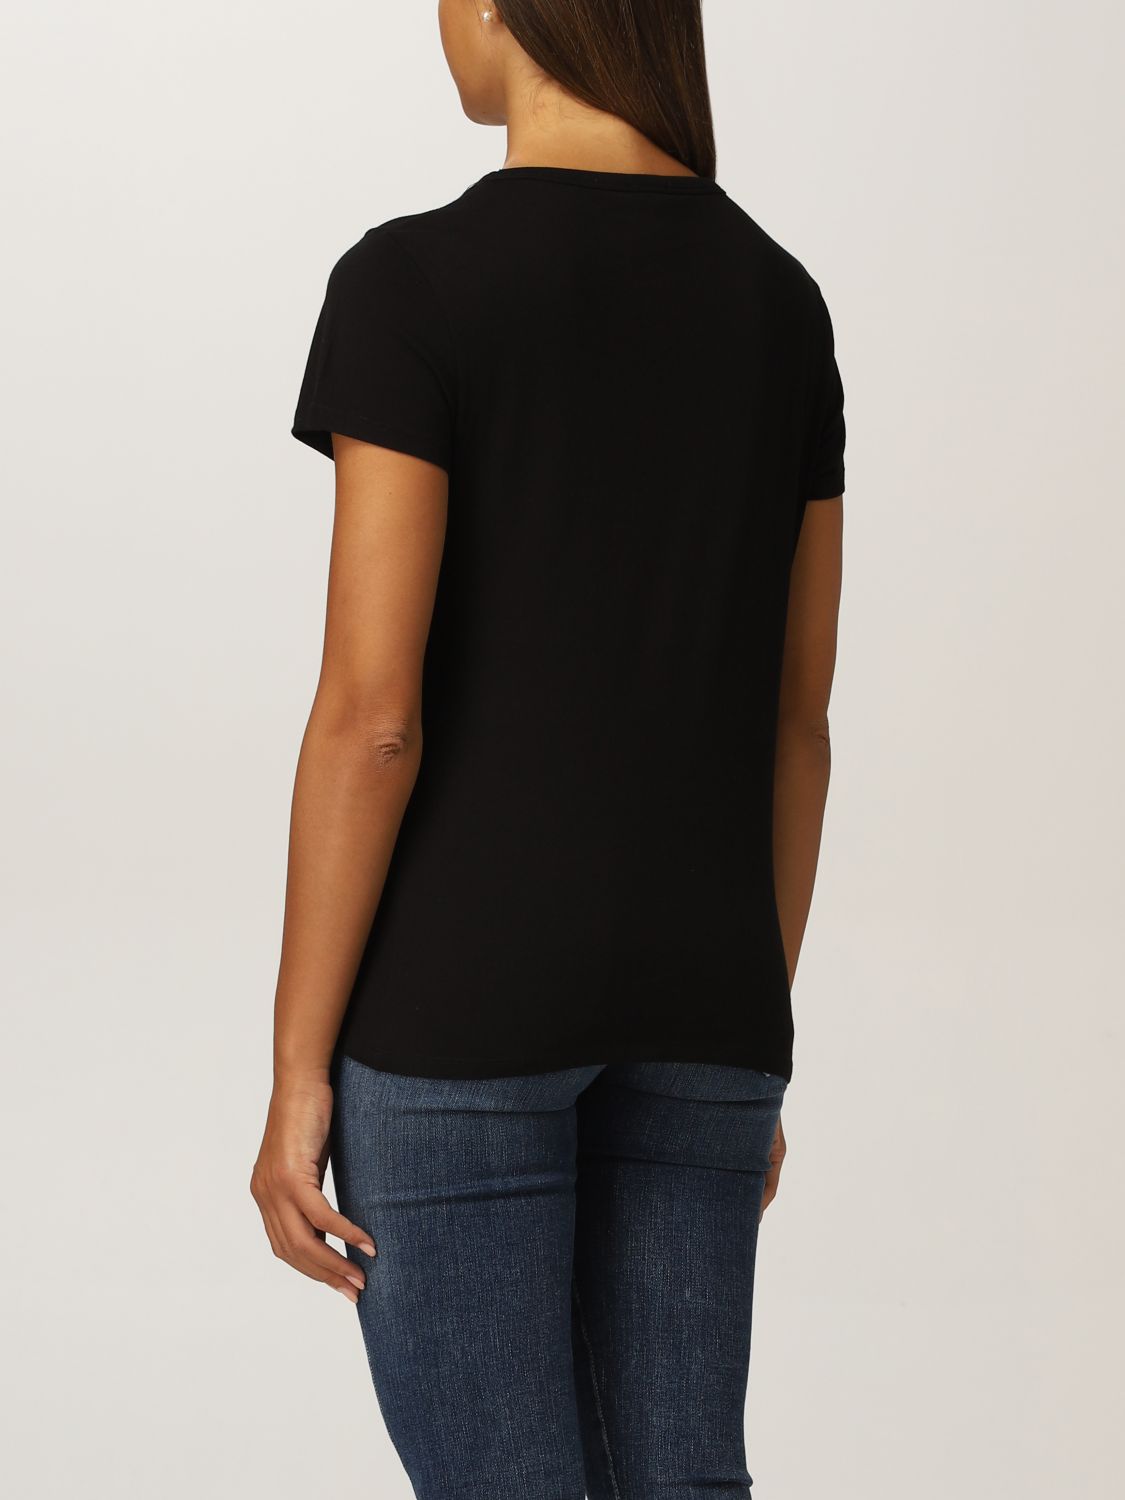 T-Shirt Just Cavalli: T-shirt women Just Cavalli black 2